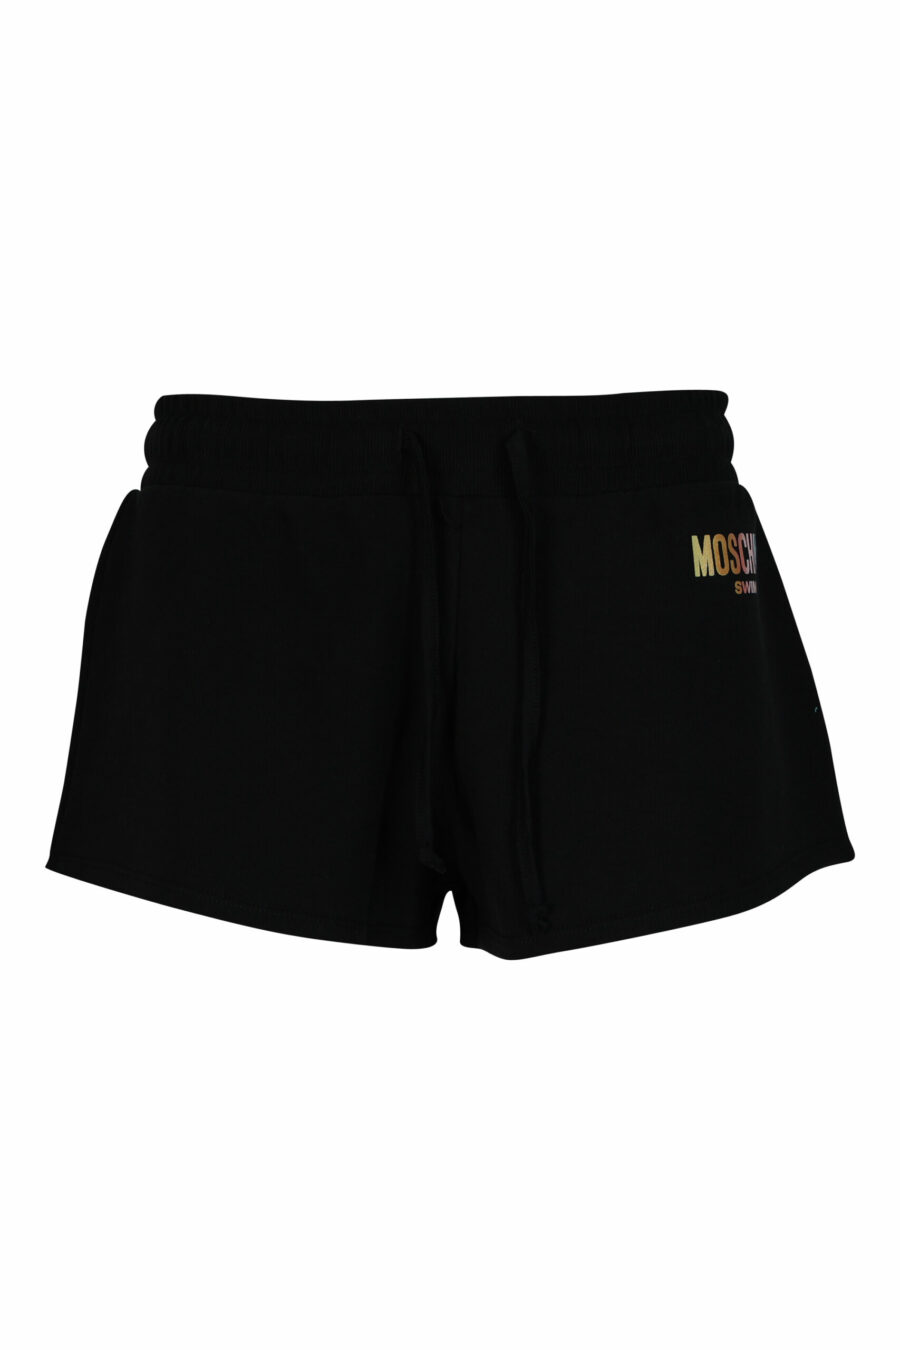 Schwarze Shorts mit mehrfarbigem Mini-Logo - 667113355924 skaliert